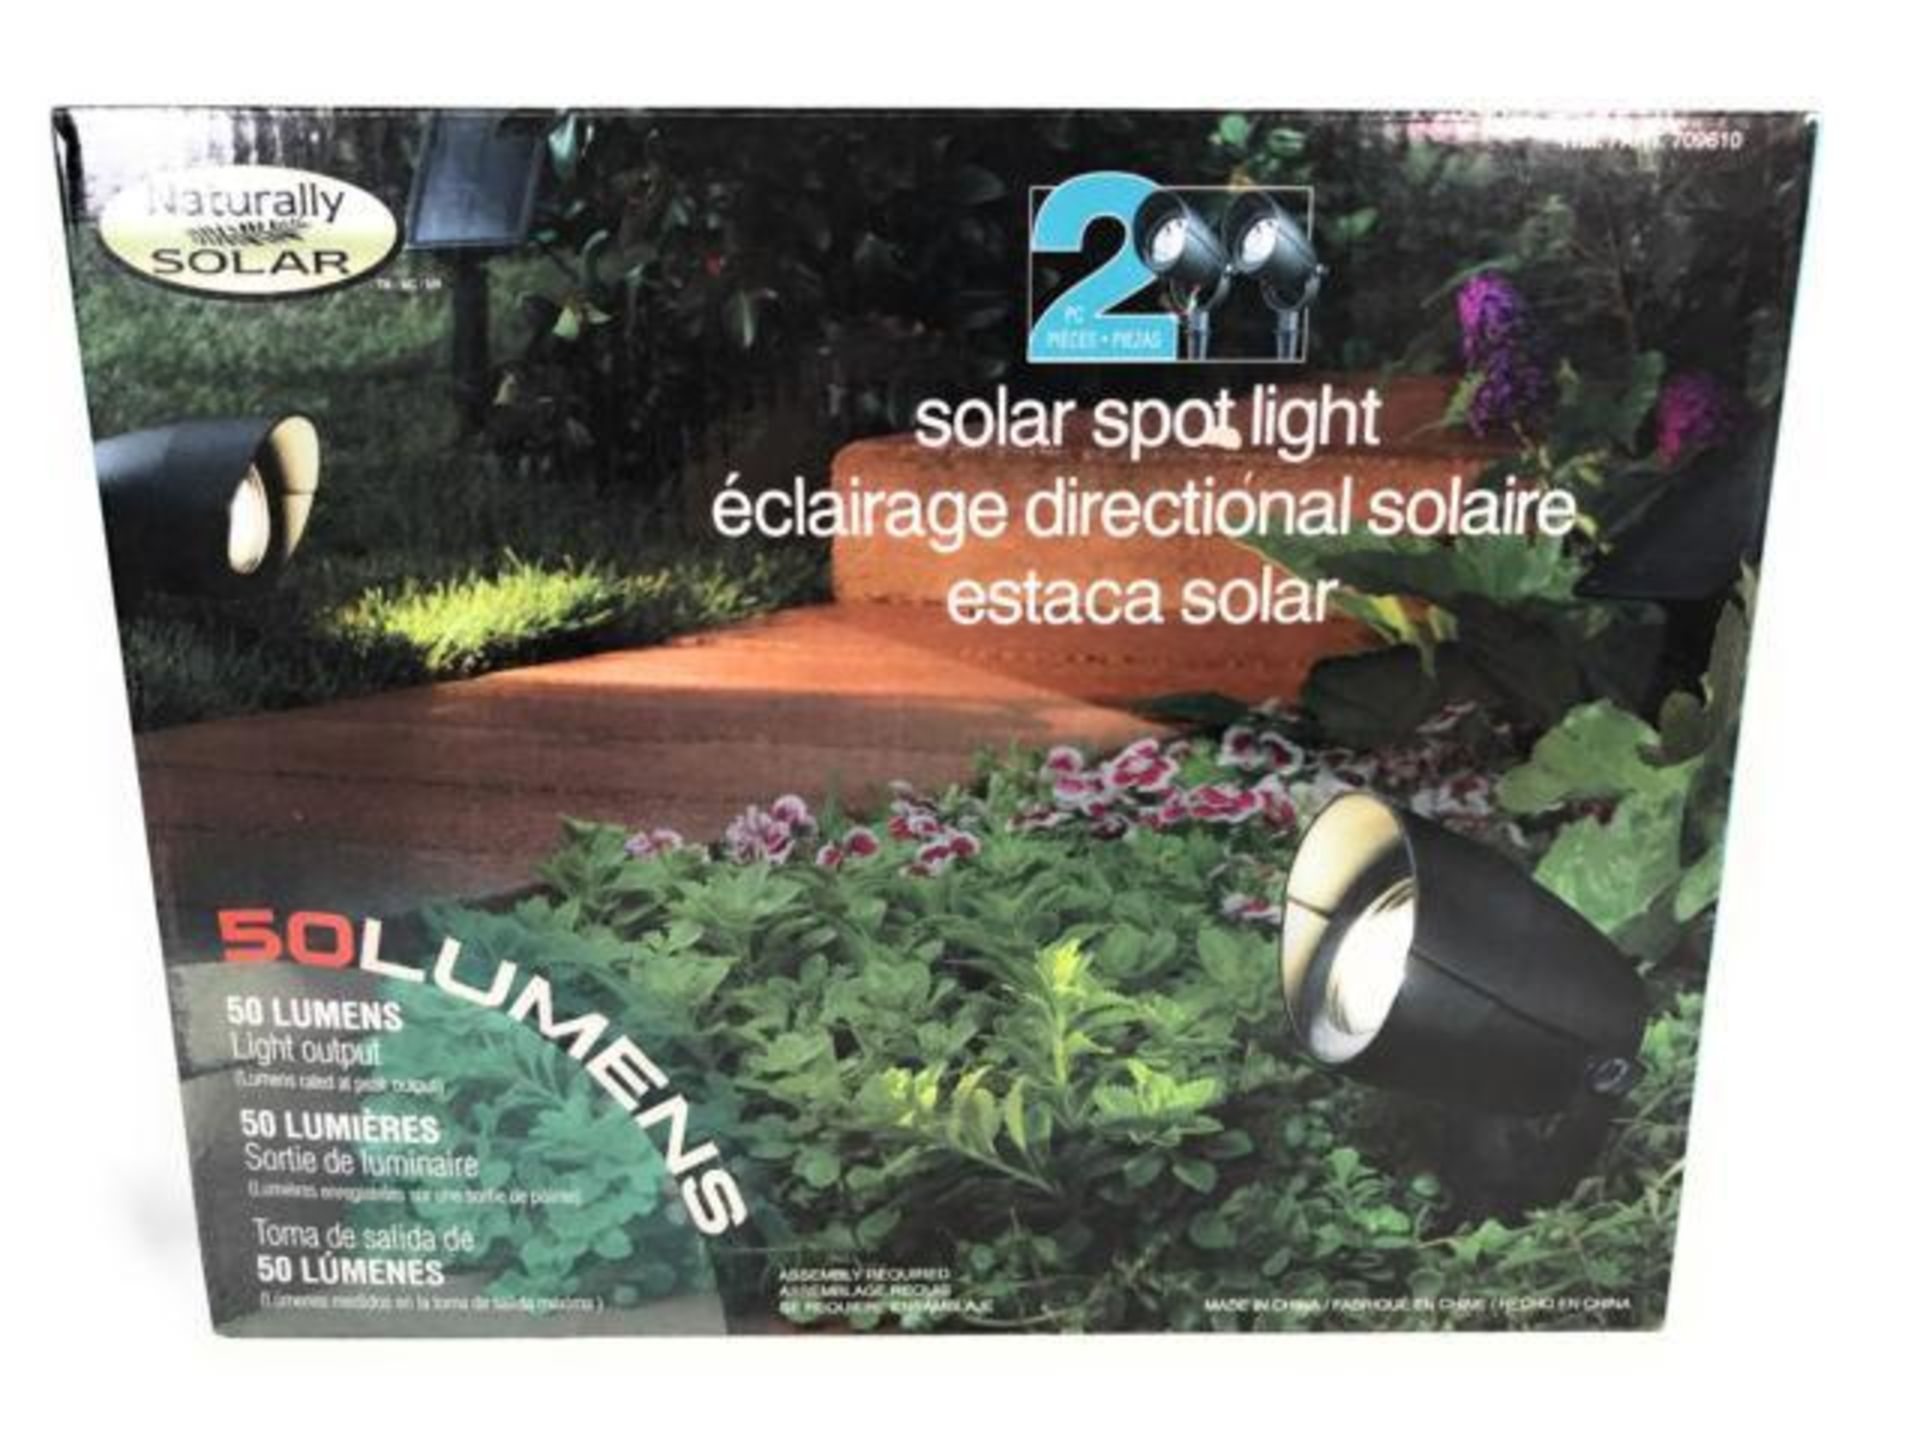 [1] NATURALLY SOLAR 2-Piece Solar Spot Light, 50 Lumens, Store return